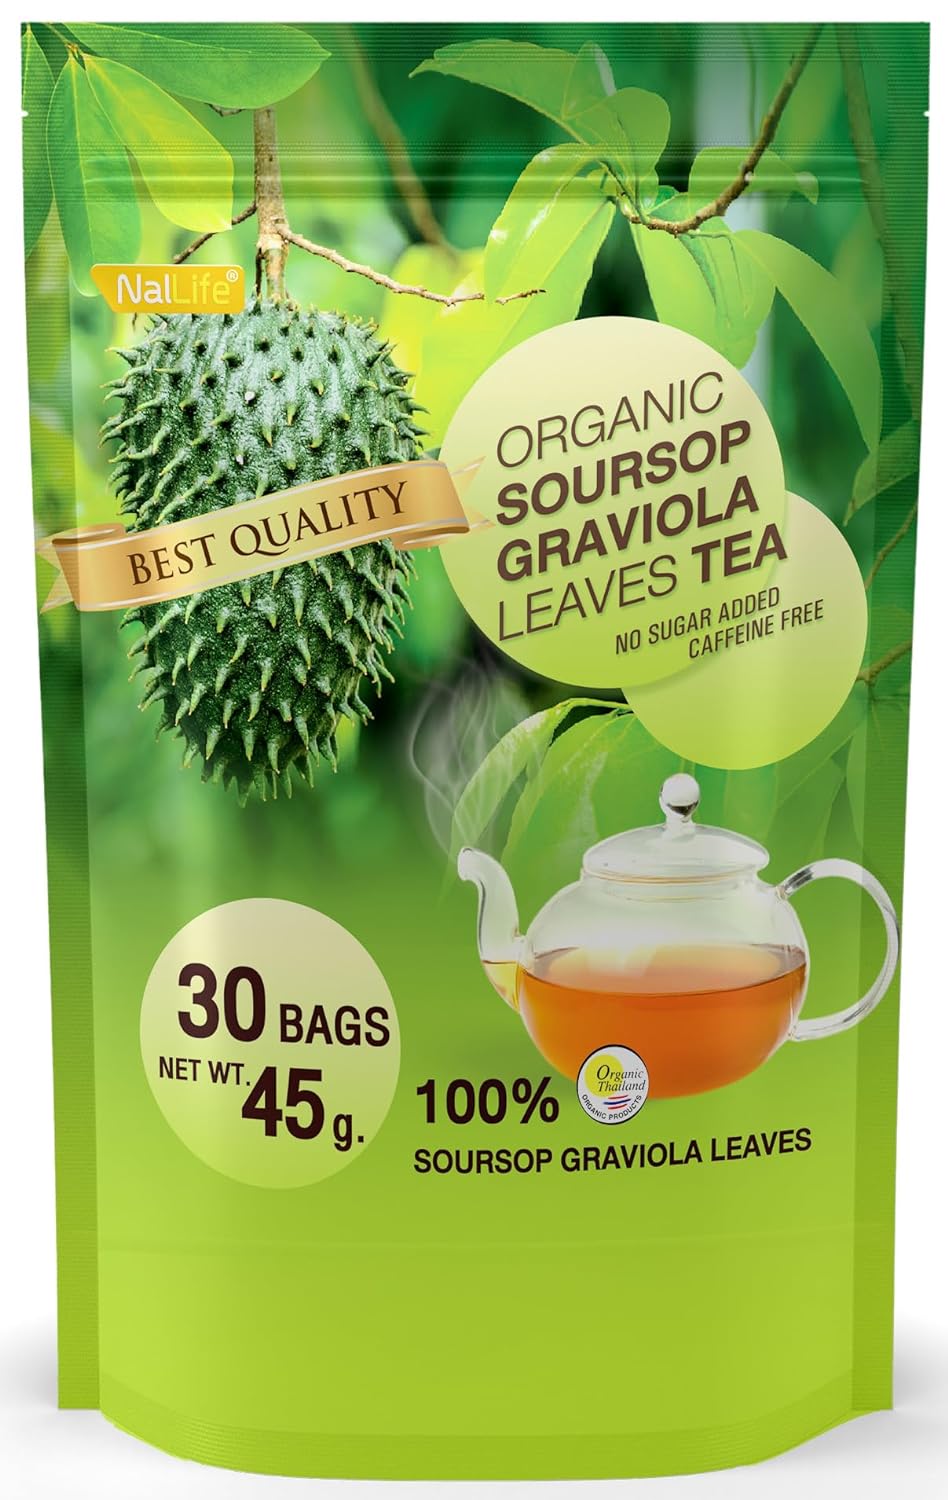 Organic Soursop Graviola Leaves Tea Pack of 30 Bags NalLife